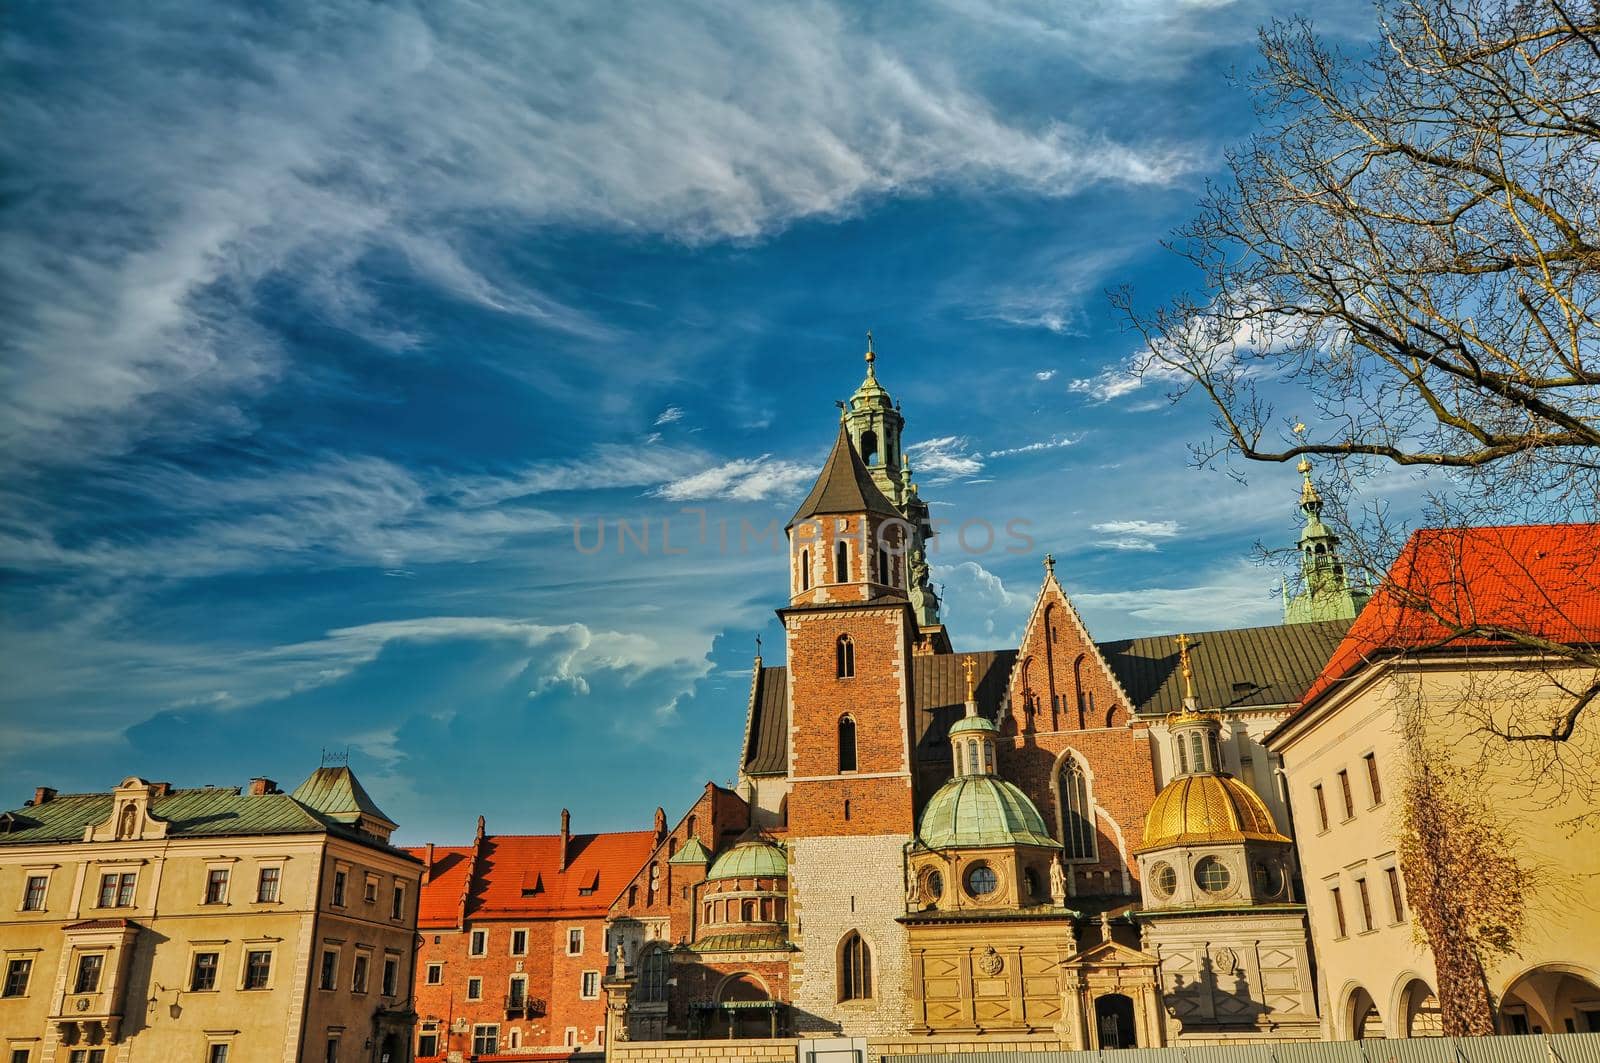 Wawel castle in Krakow of Poland by feelmytravel